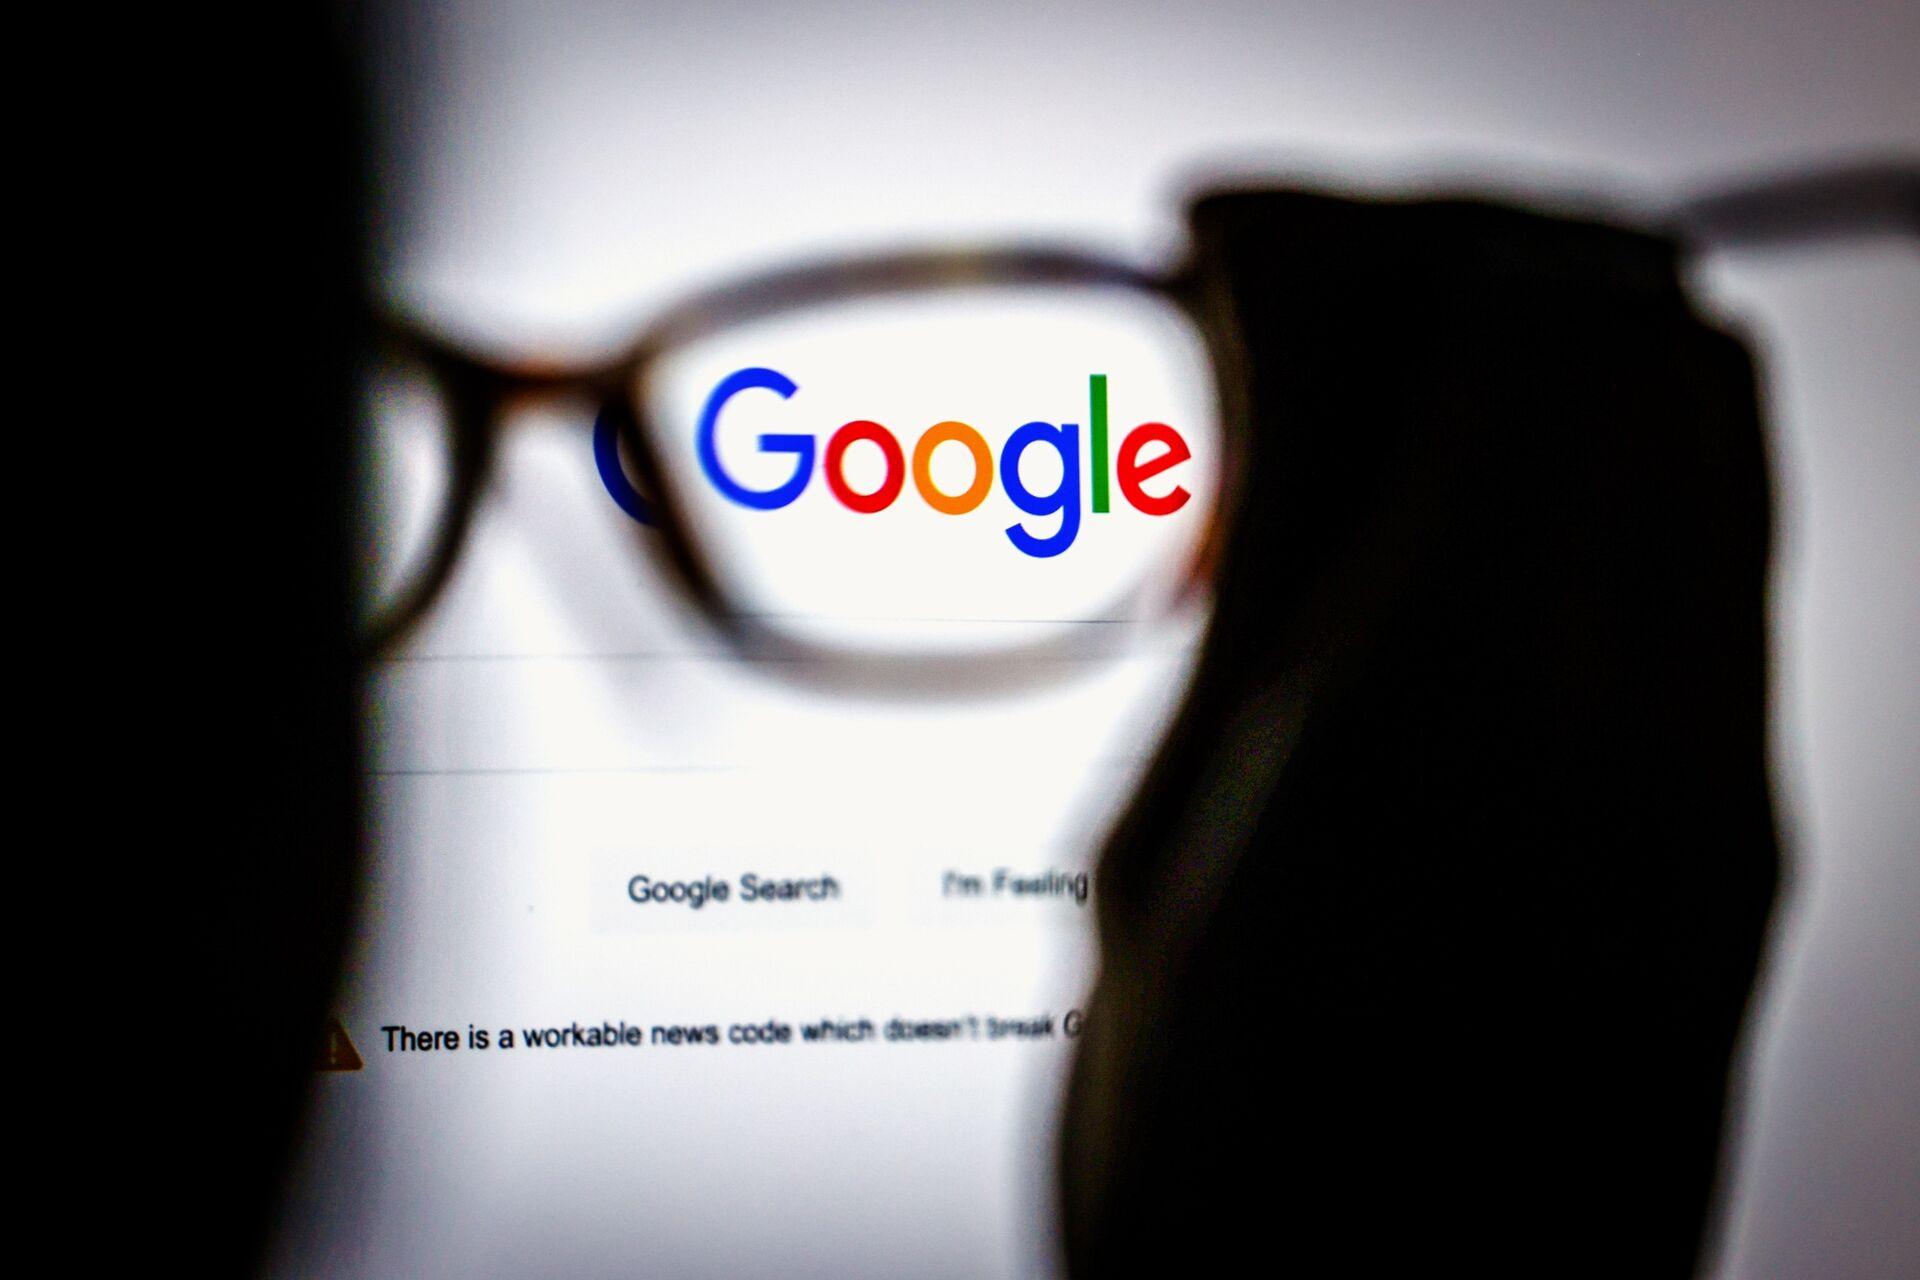 مرجع متخصصين ايران لوگو گوگل سرچ / Google Search در شيشه عينك